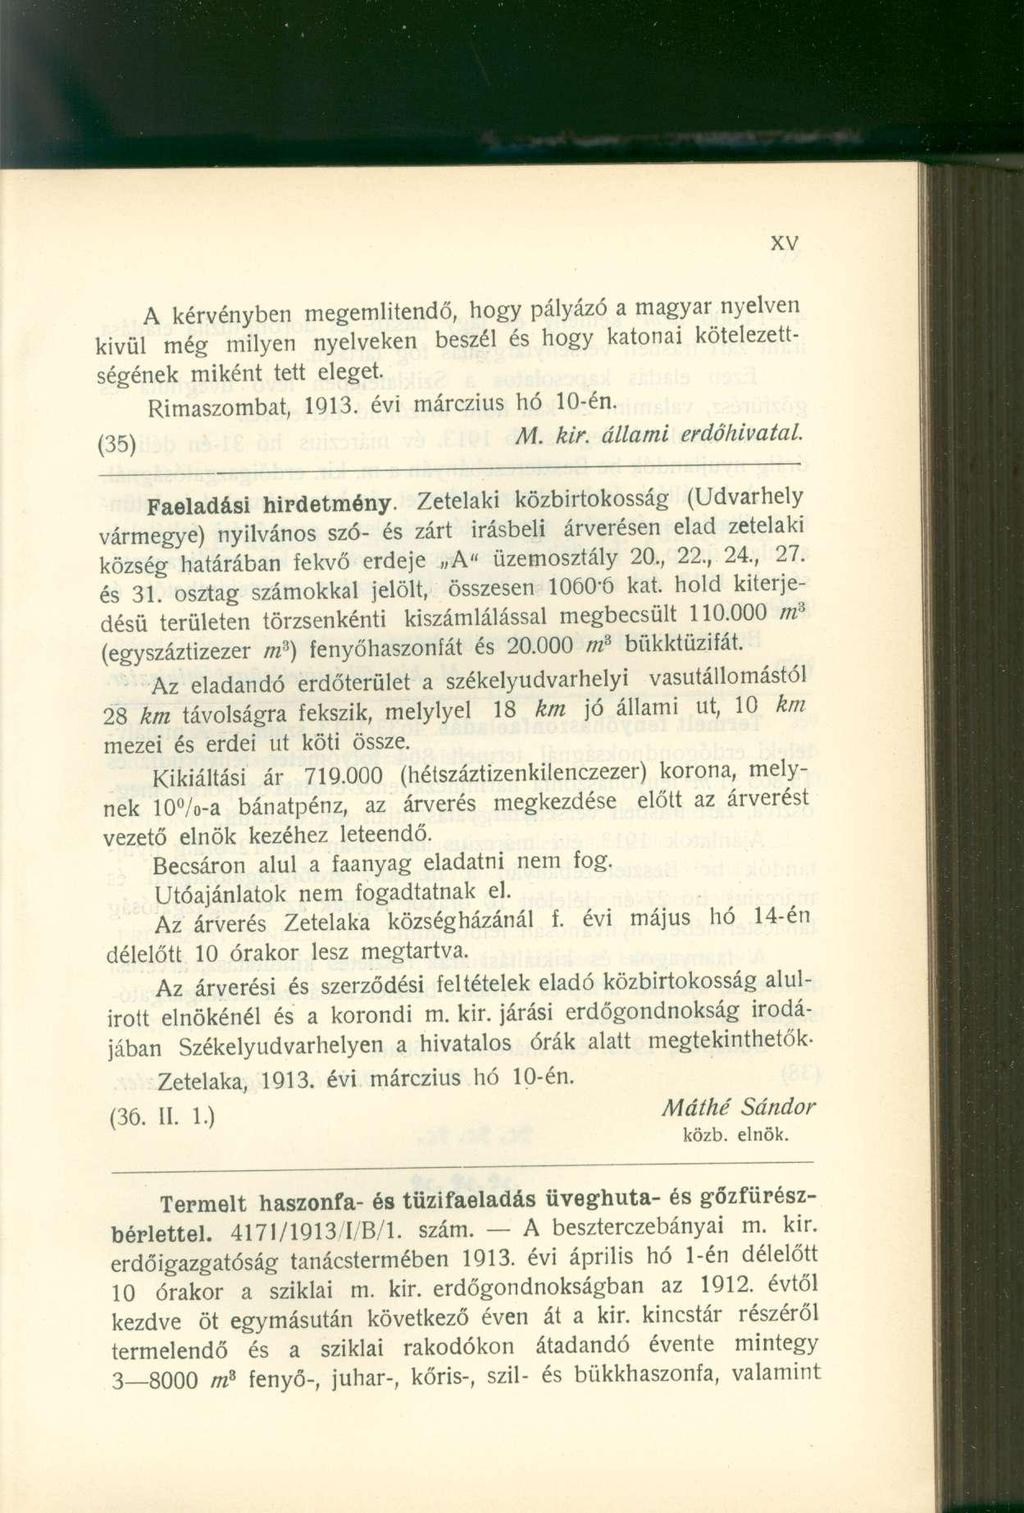 A kérvényben megemlítendő, hogy pályázó a magyar nyelven kivül még milyen nyelveken beszél és hogy katonai kötelezettségének miként tett eleget. Rimaszombat, 1913. évi márczius hó 10-én. (35) M. kir.